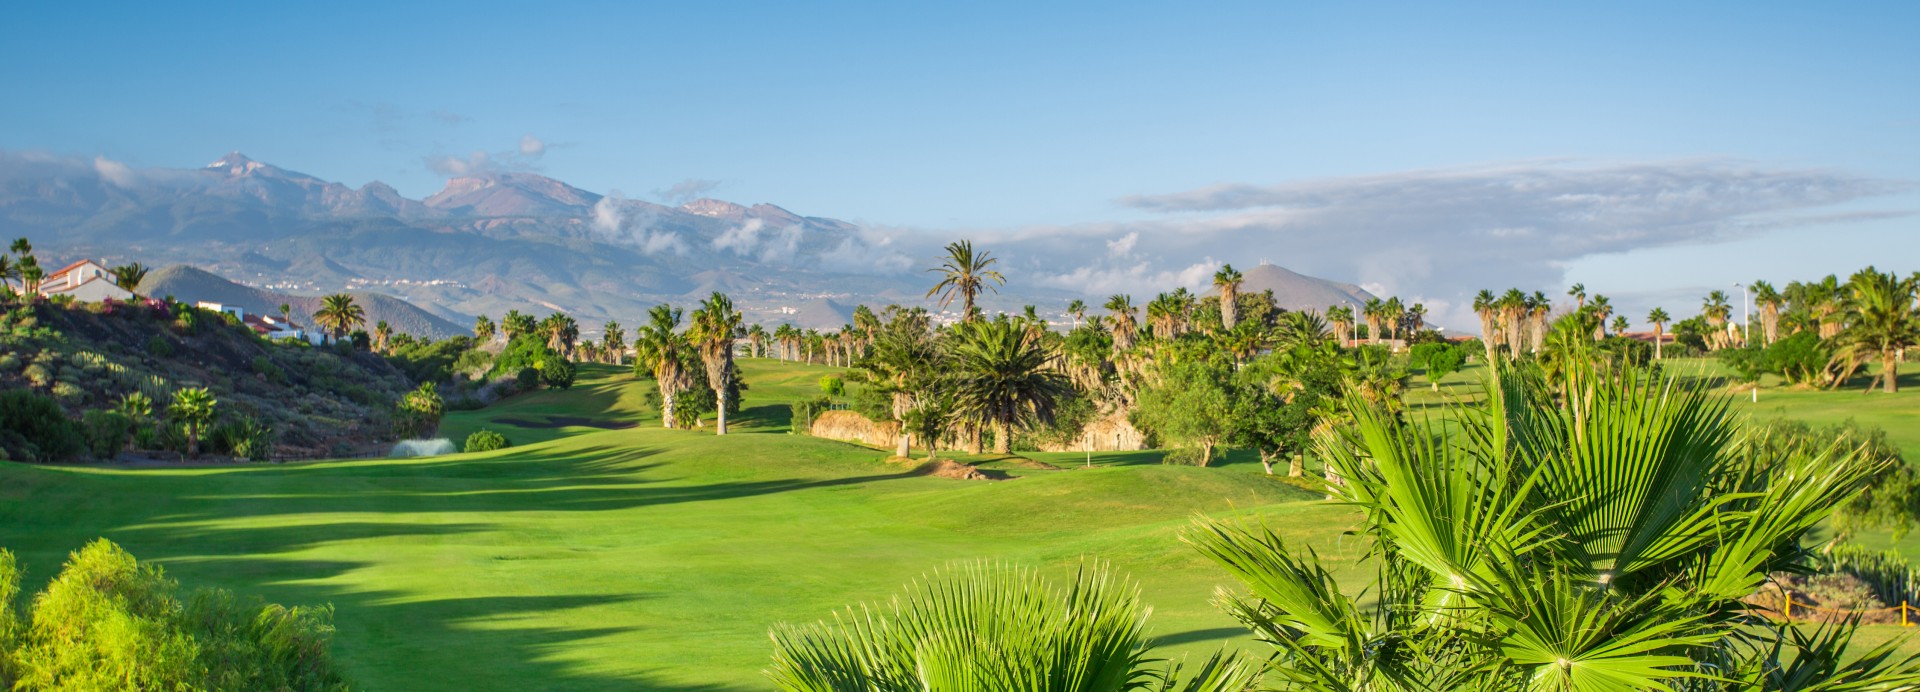 Golf del Sur Tenerife  | Golfové zájezdy, golfová dovolená, luxusní golf